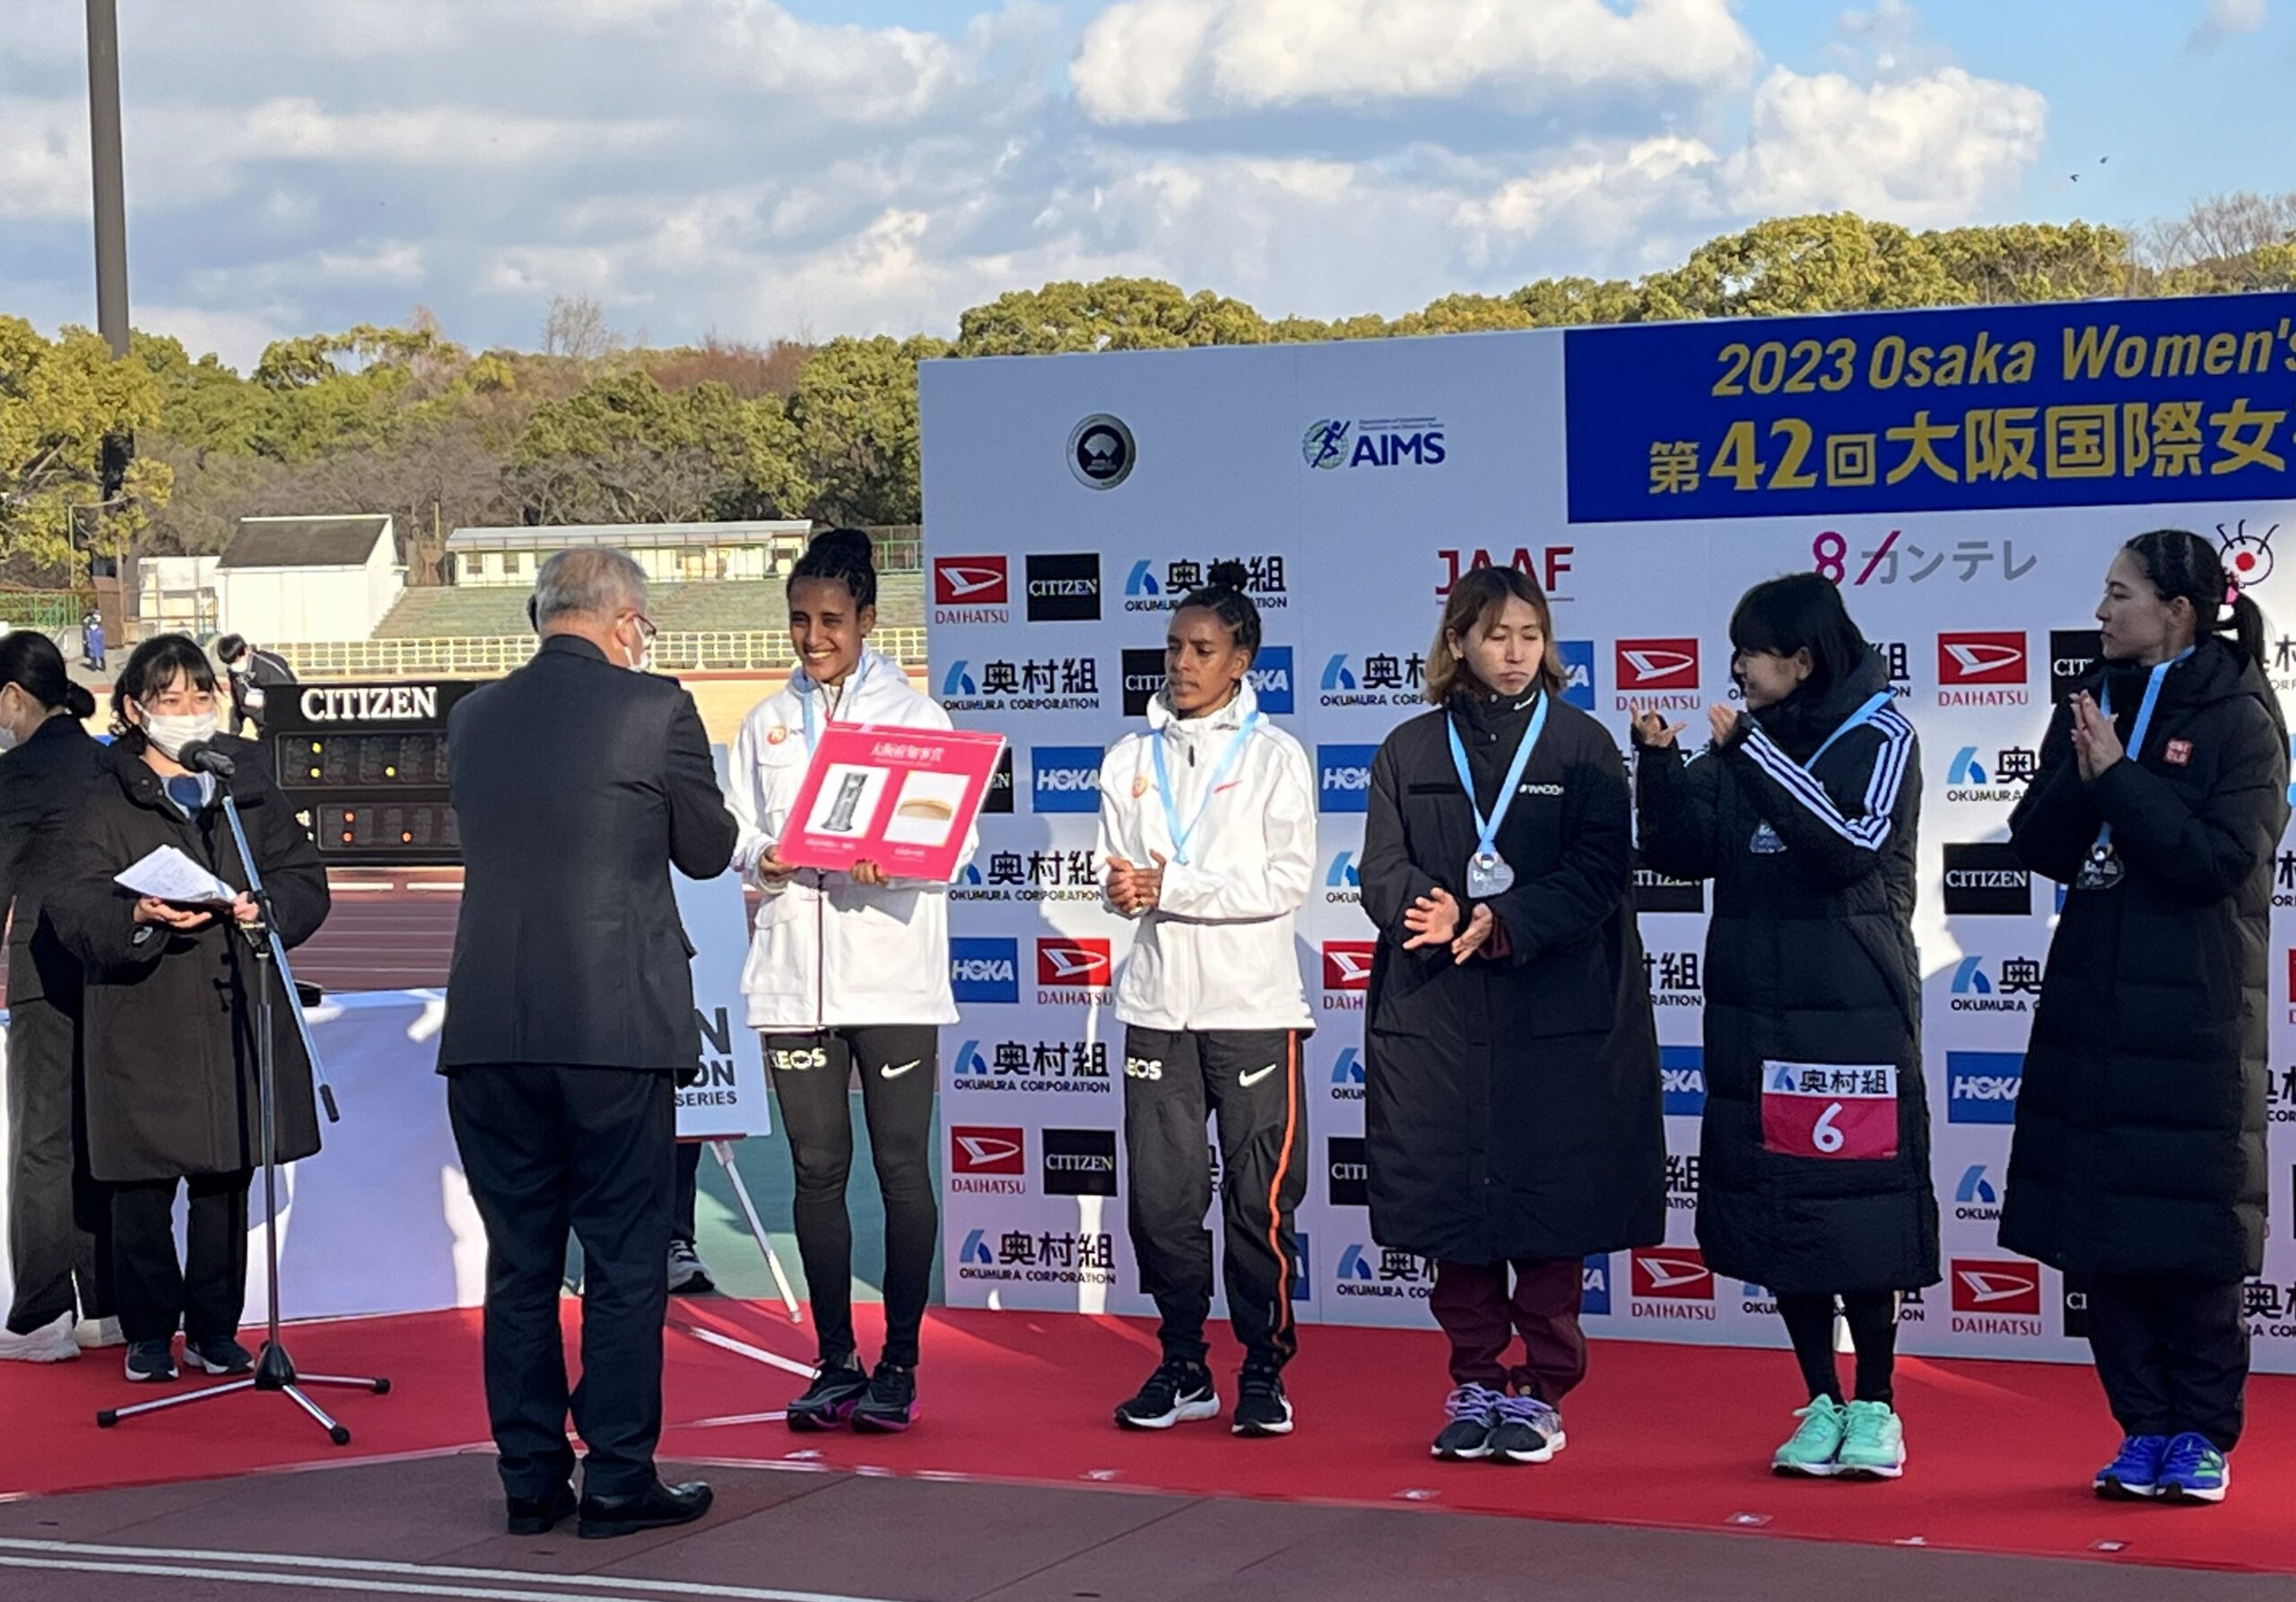 第42回大阪国際女子マラソン大会表彰式において大阪府知事賞を贈呈しました